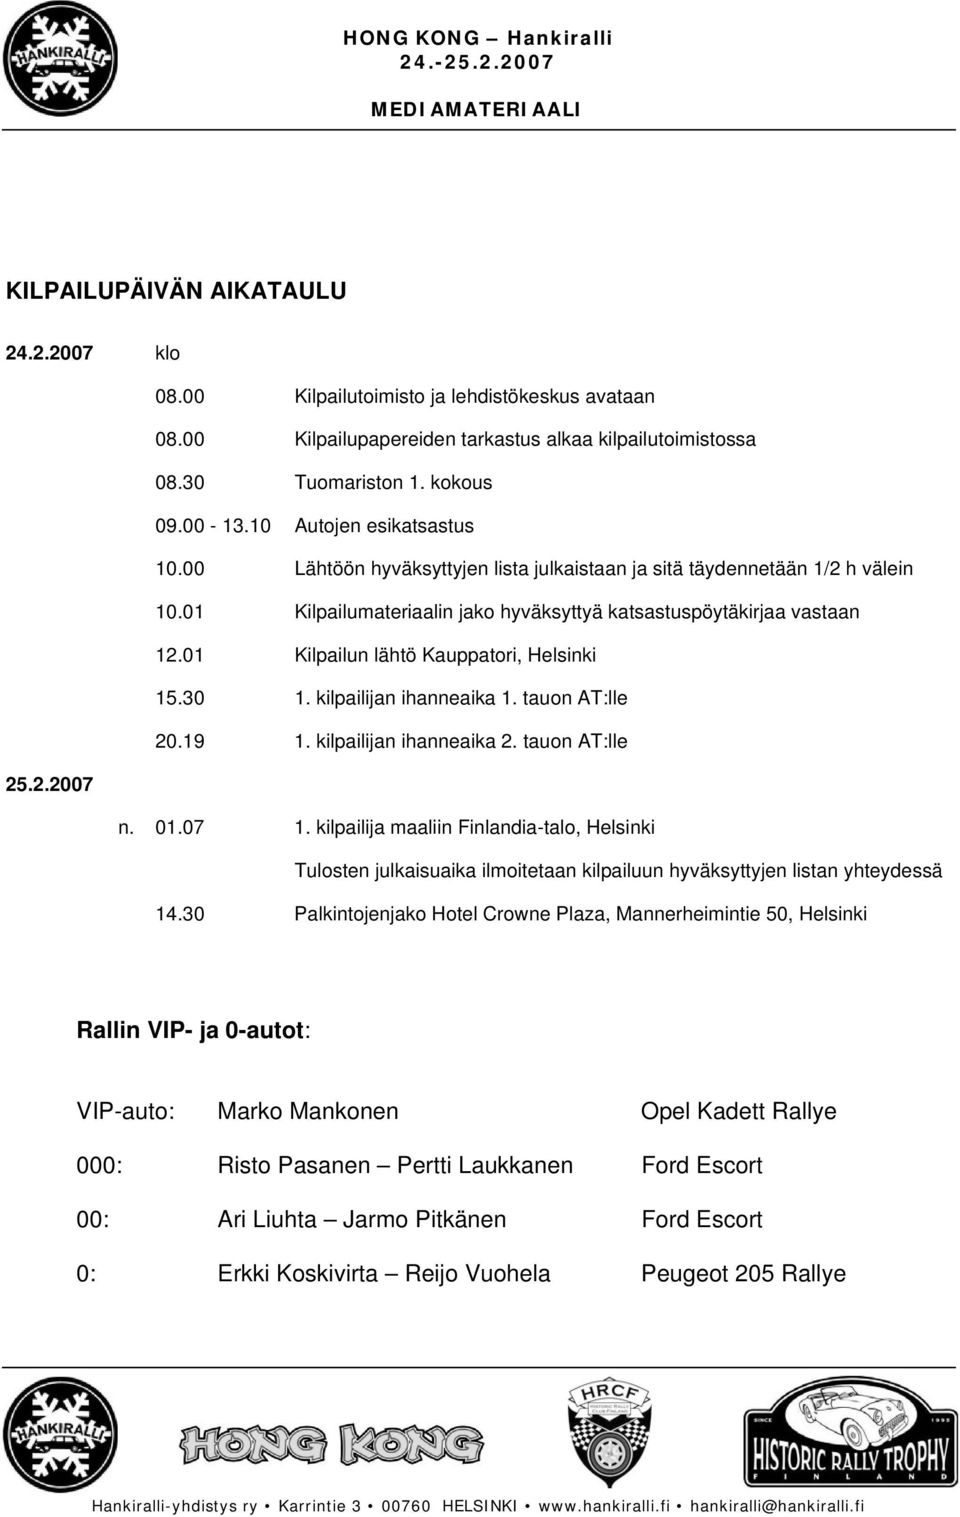 01 Kilpailun lähtö Kauppatori, Helsinki 15.30 1. kilpailijan ihanneaika 1. tauon AT:lle 20.19 1. kilpailijan ihanneaika 2. tauon AT:lle 25.2.2007 n. 01.07 1.